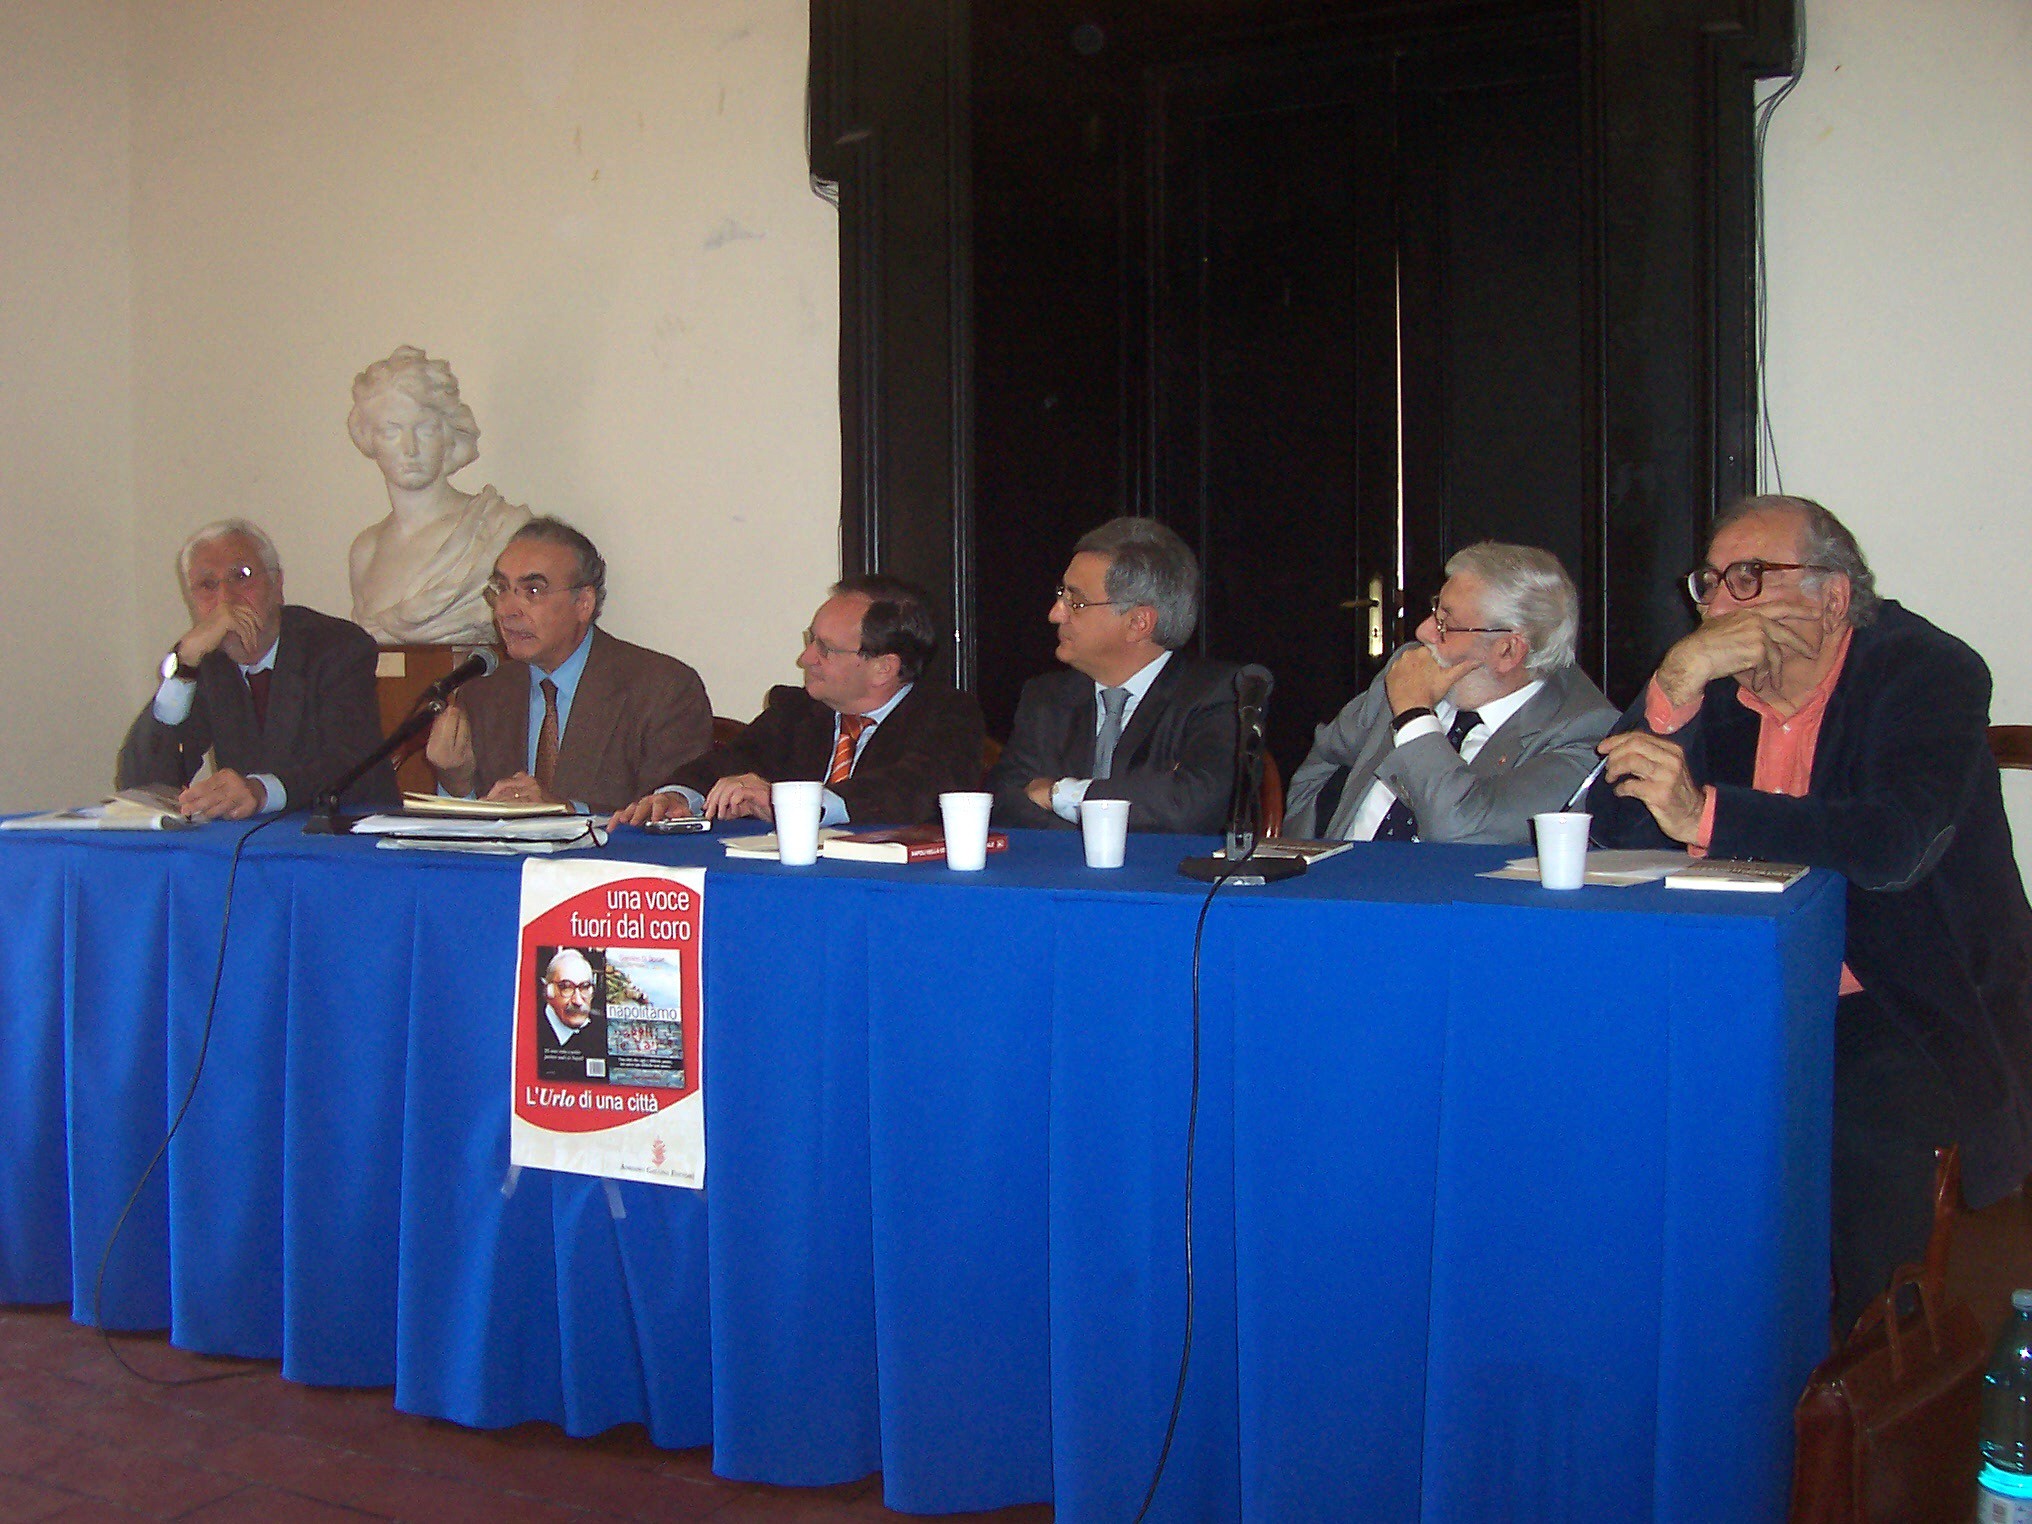 Presentazione del libro ’Napolitamo’, di Giannino Di Stasio - Sala dei Baroni, Napoli, 6 aprile 2008: Intervento di Ermanno Corsi, direttore del Tg3 Campania.